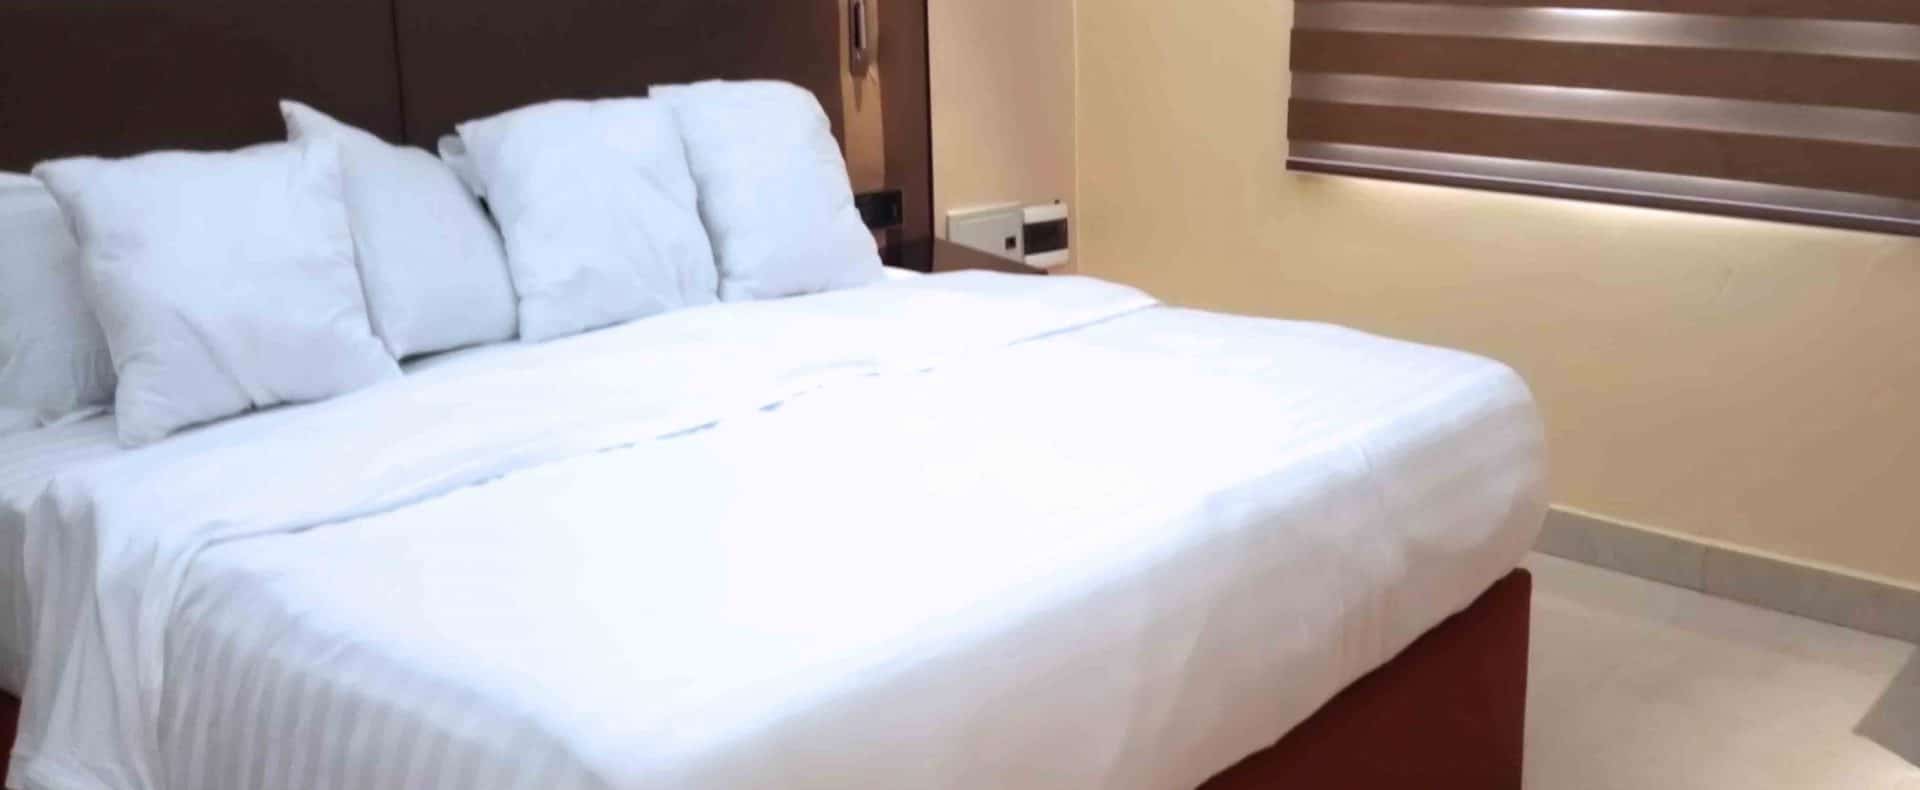 Hotel Luxor Room In Owerri Imo Nigeria